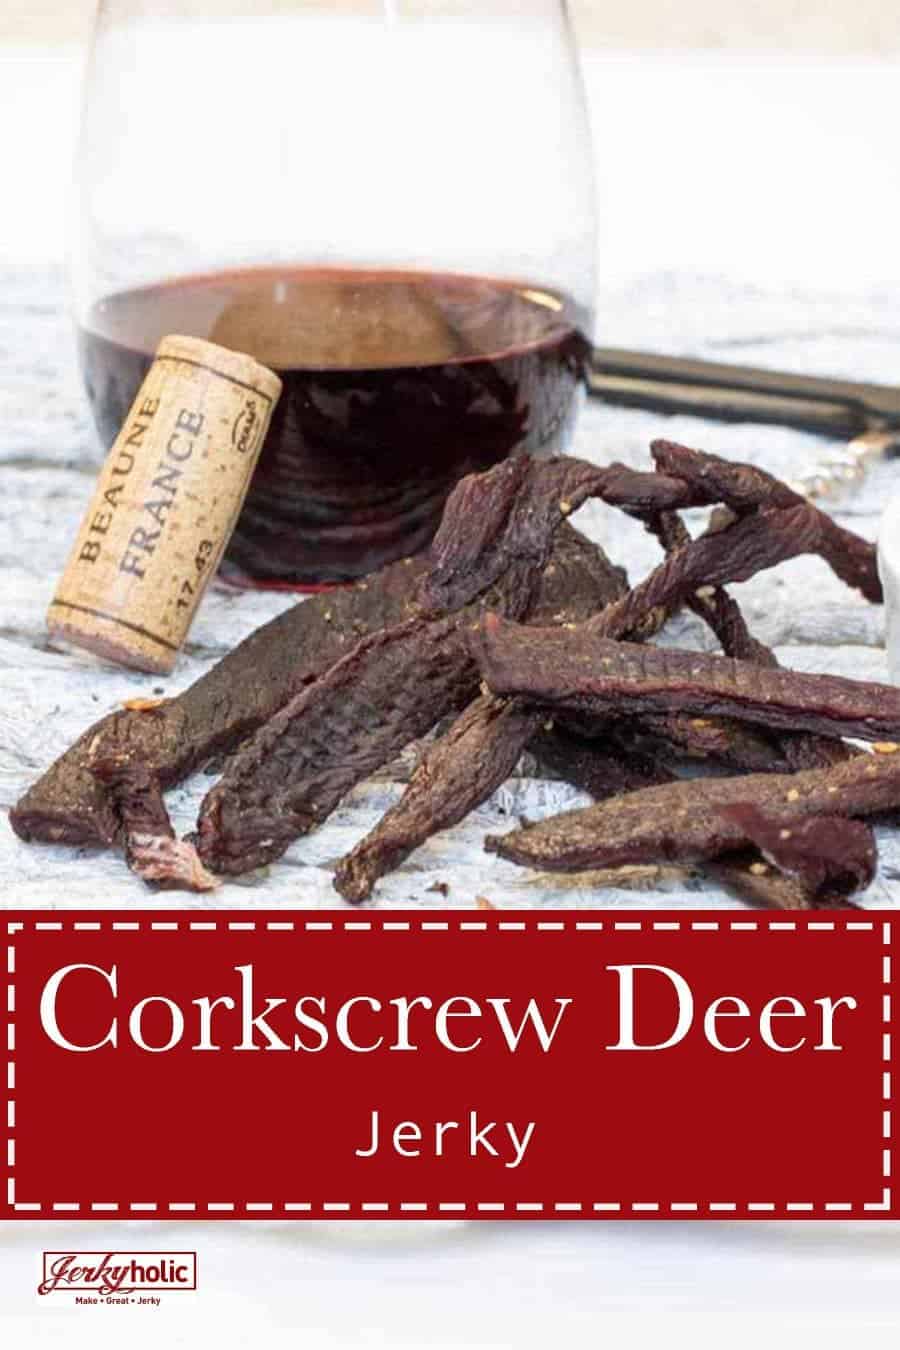 Corkscrew Deer Jerky